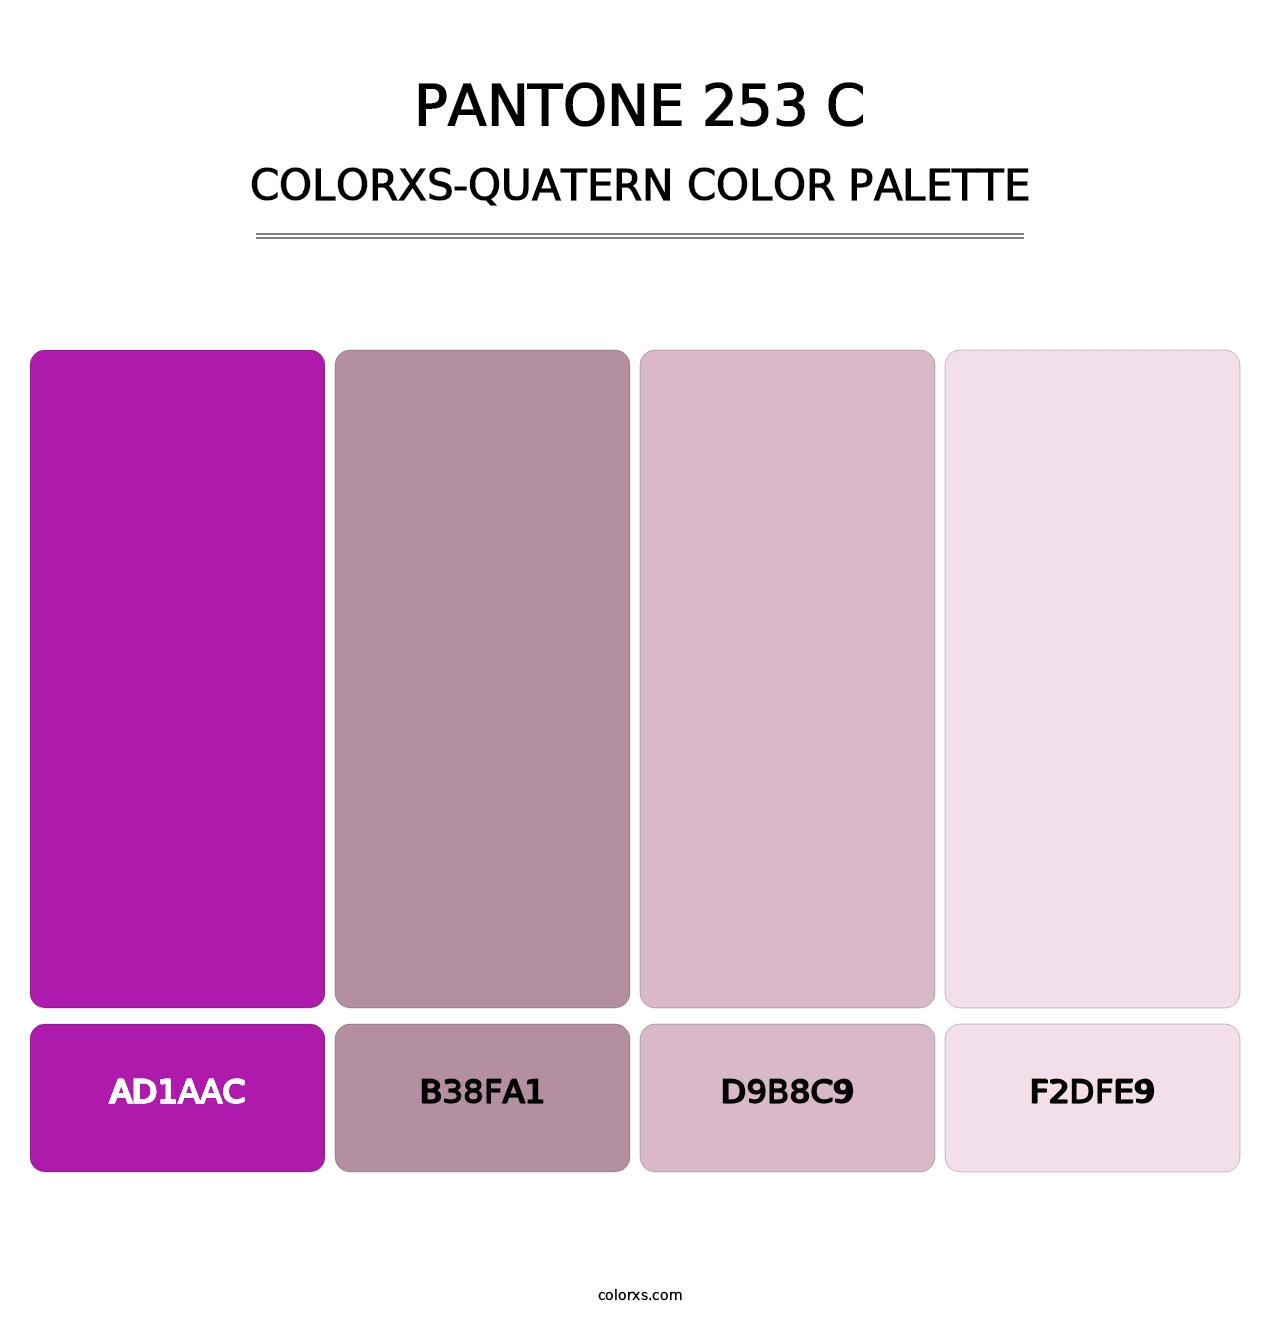 PANTONE 253 C - Colorxs Quatern Palette